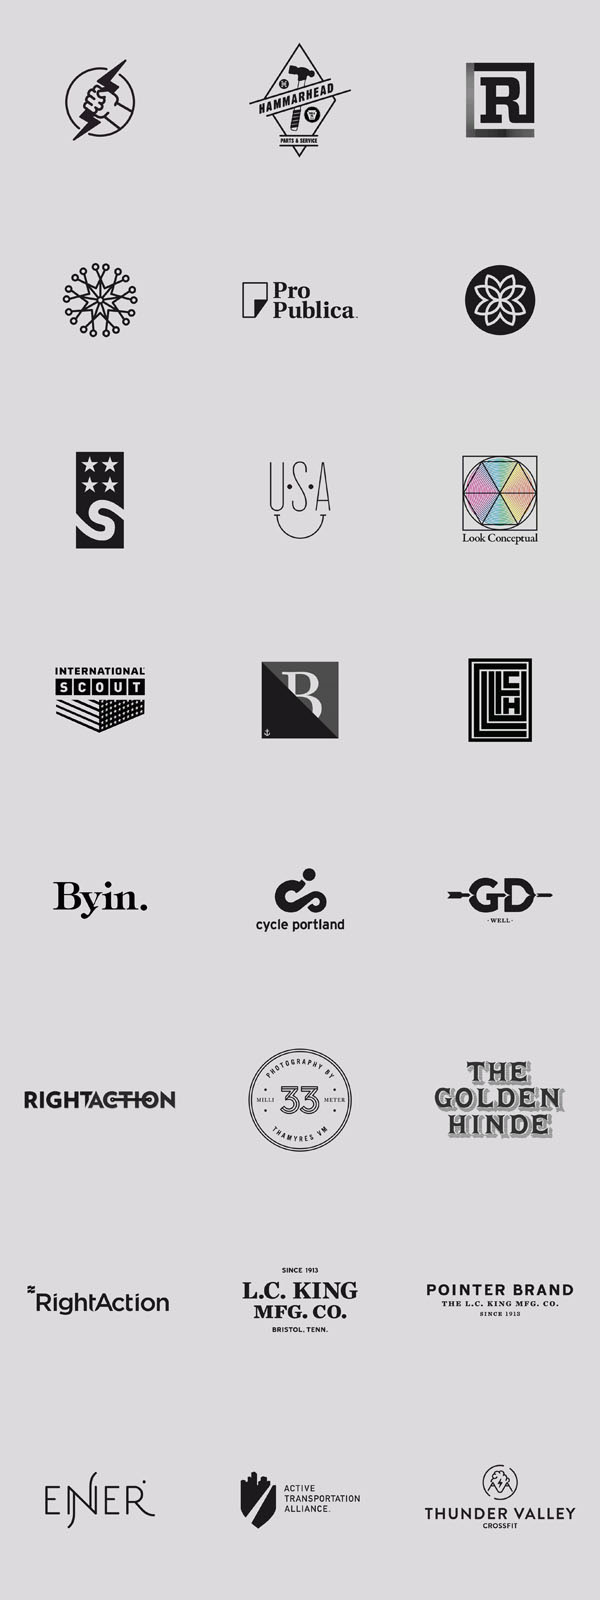 logo design ideas inspiration